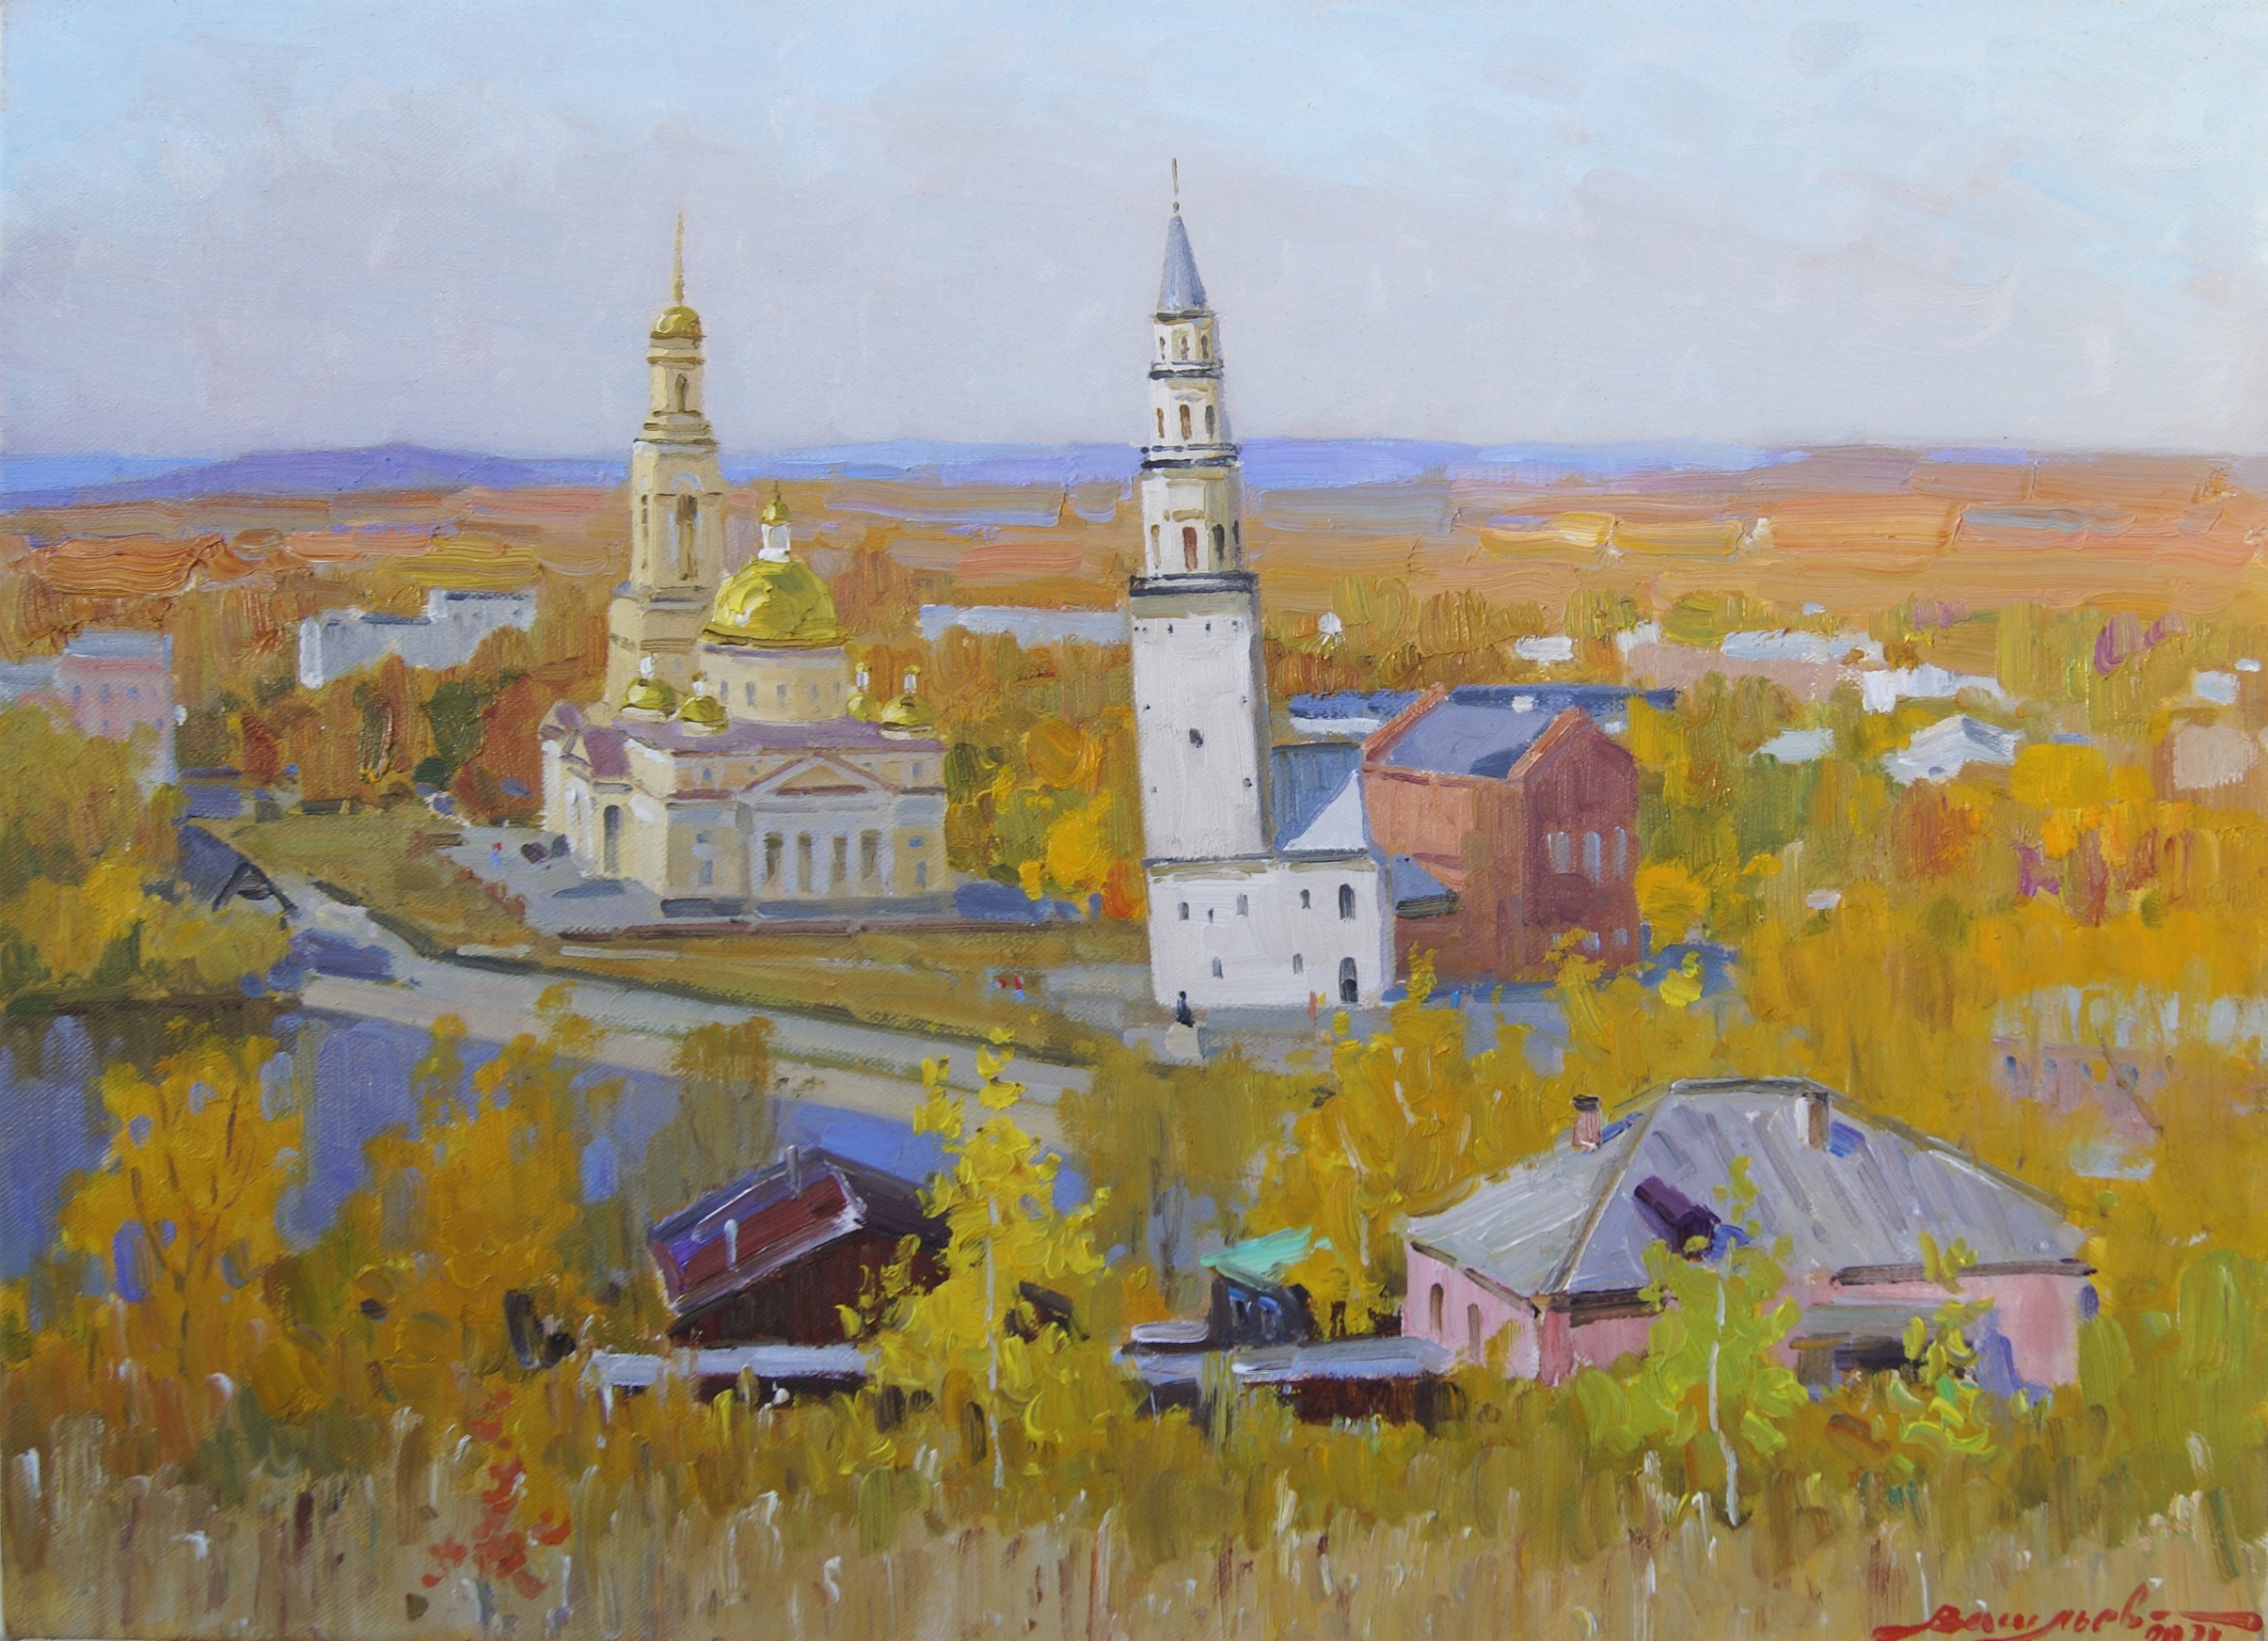 The Golden Autumn in Nevyansk - 1, Dmitry Vasiliev, Buy the painting Oil